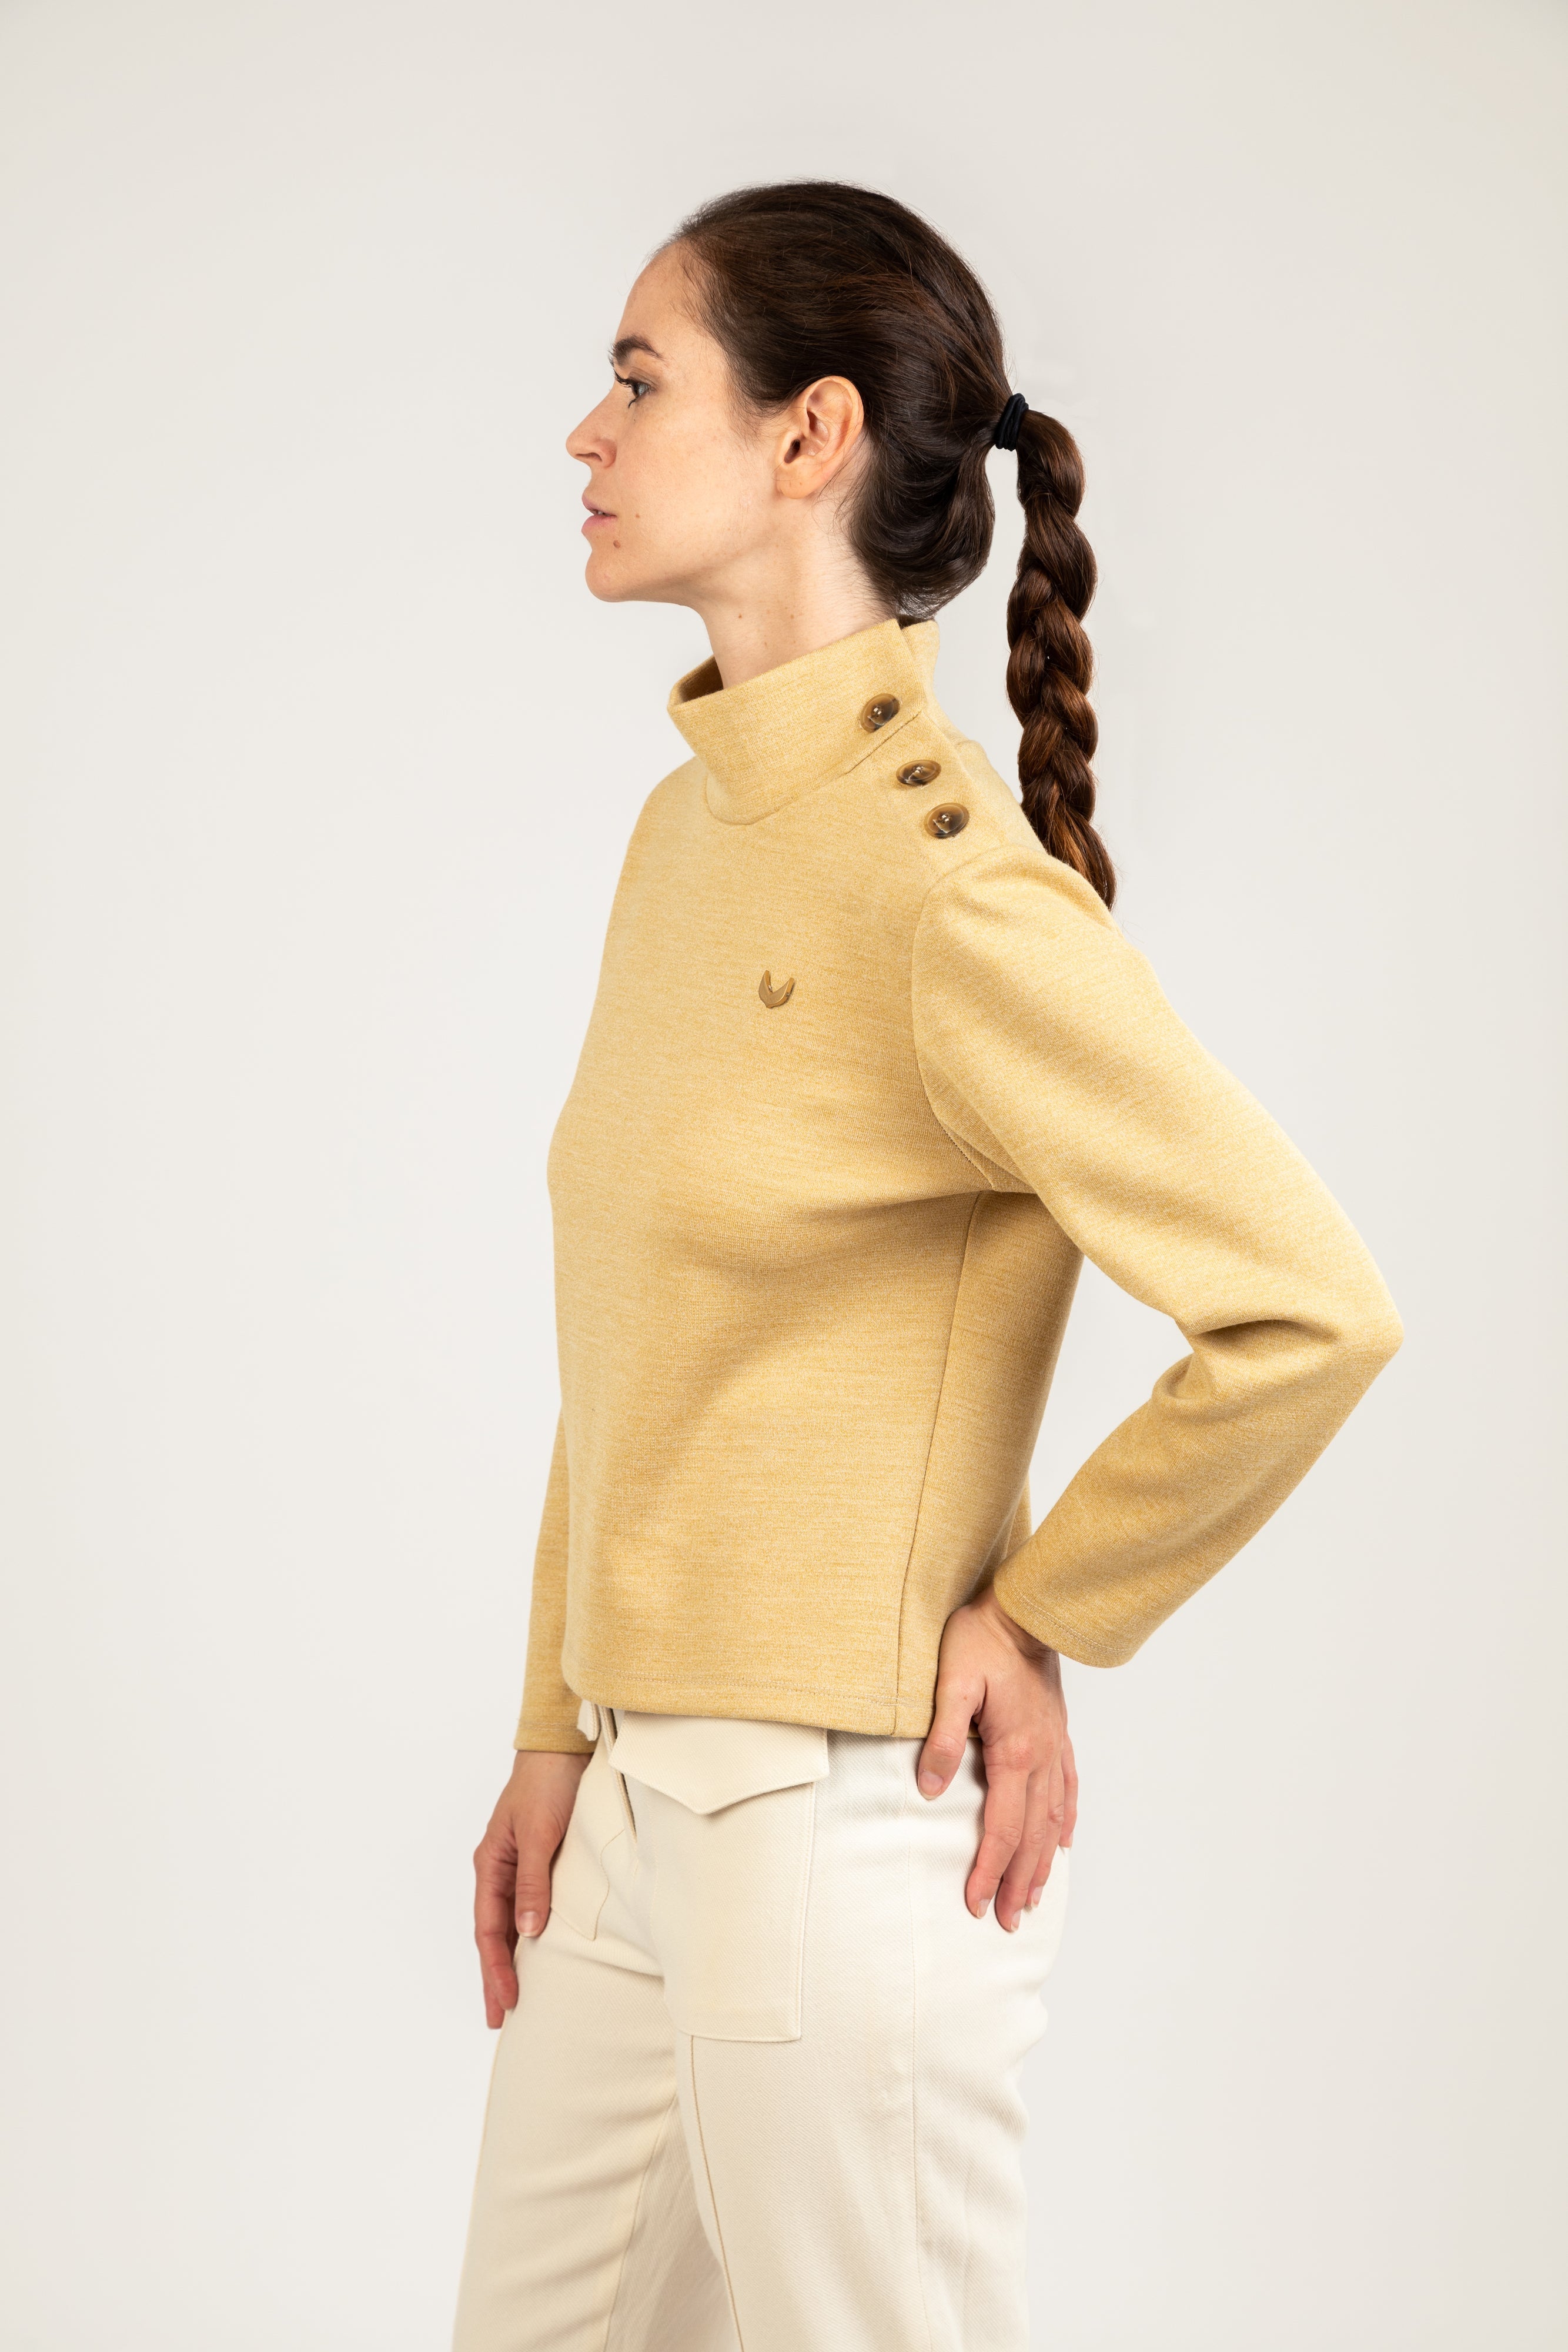 LUTAN RG - High Collar Sweater in Twisted Wool Jersey – MEUNE